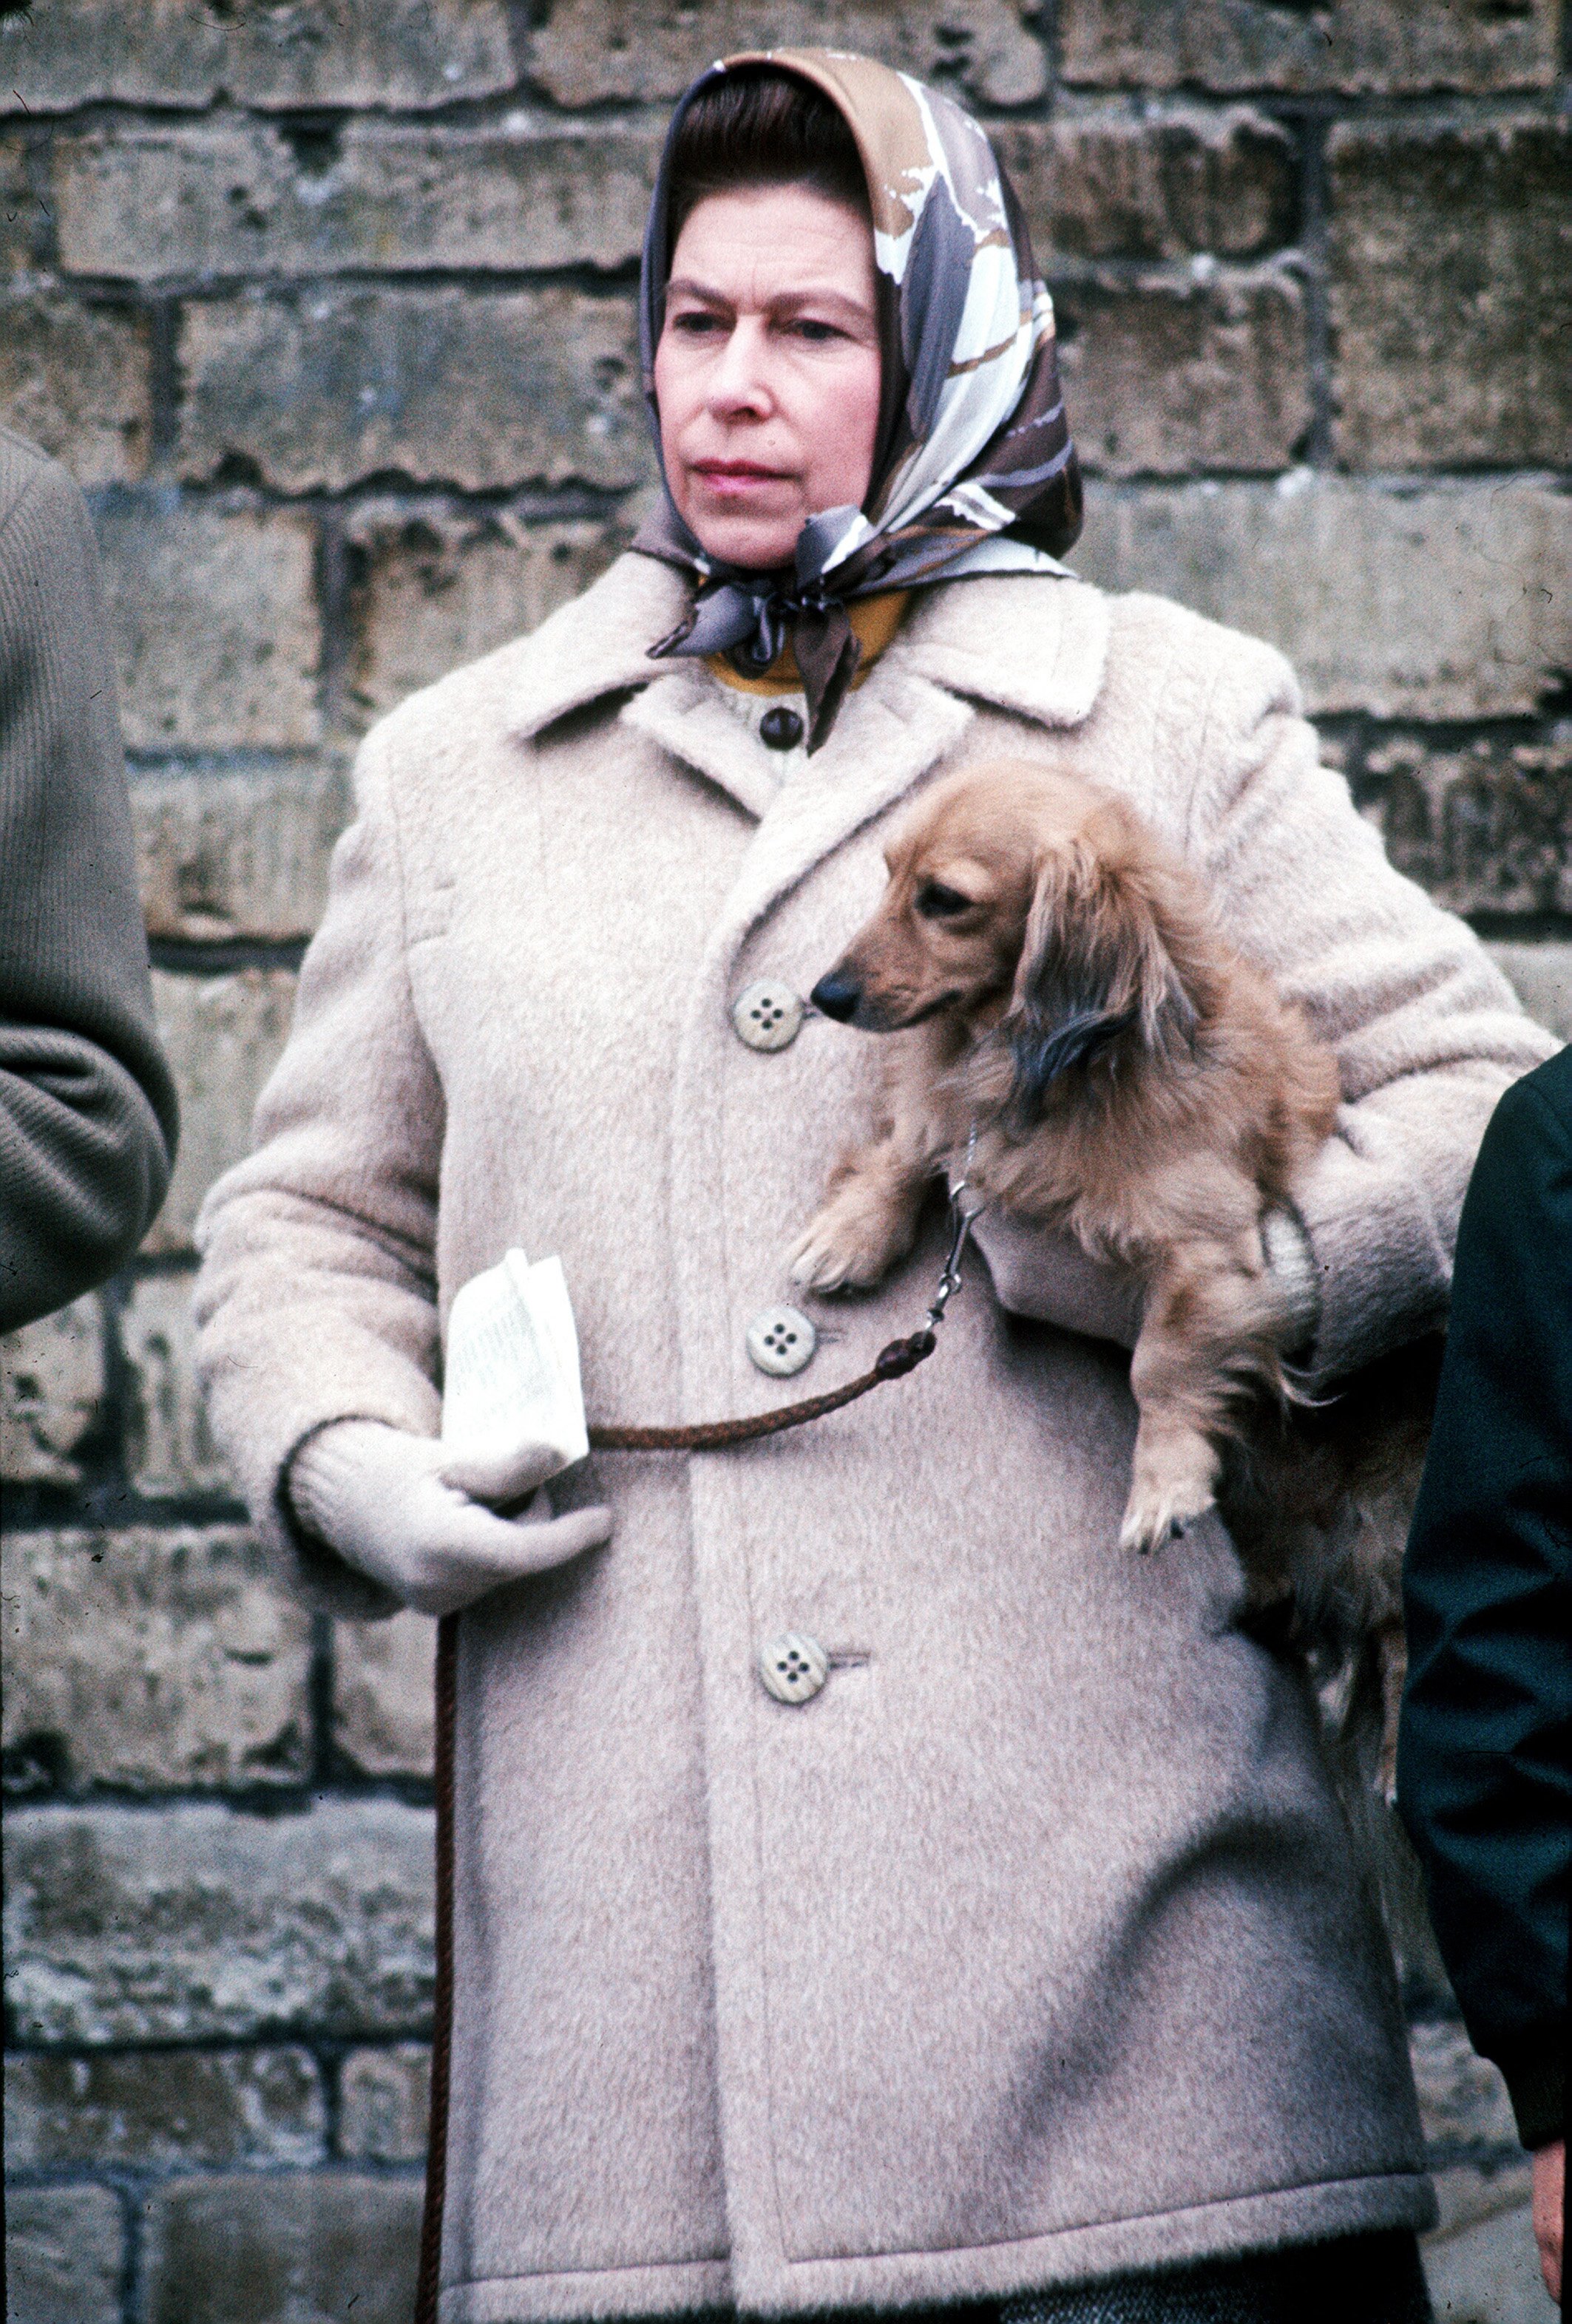 La reina Elizabeth II fotografiada con uno de sus perros favoritos en las pruebas de caballos de bádminton en abril de 1976 | Foto: Getty Images